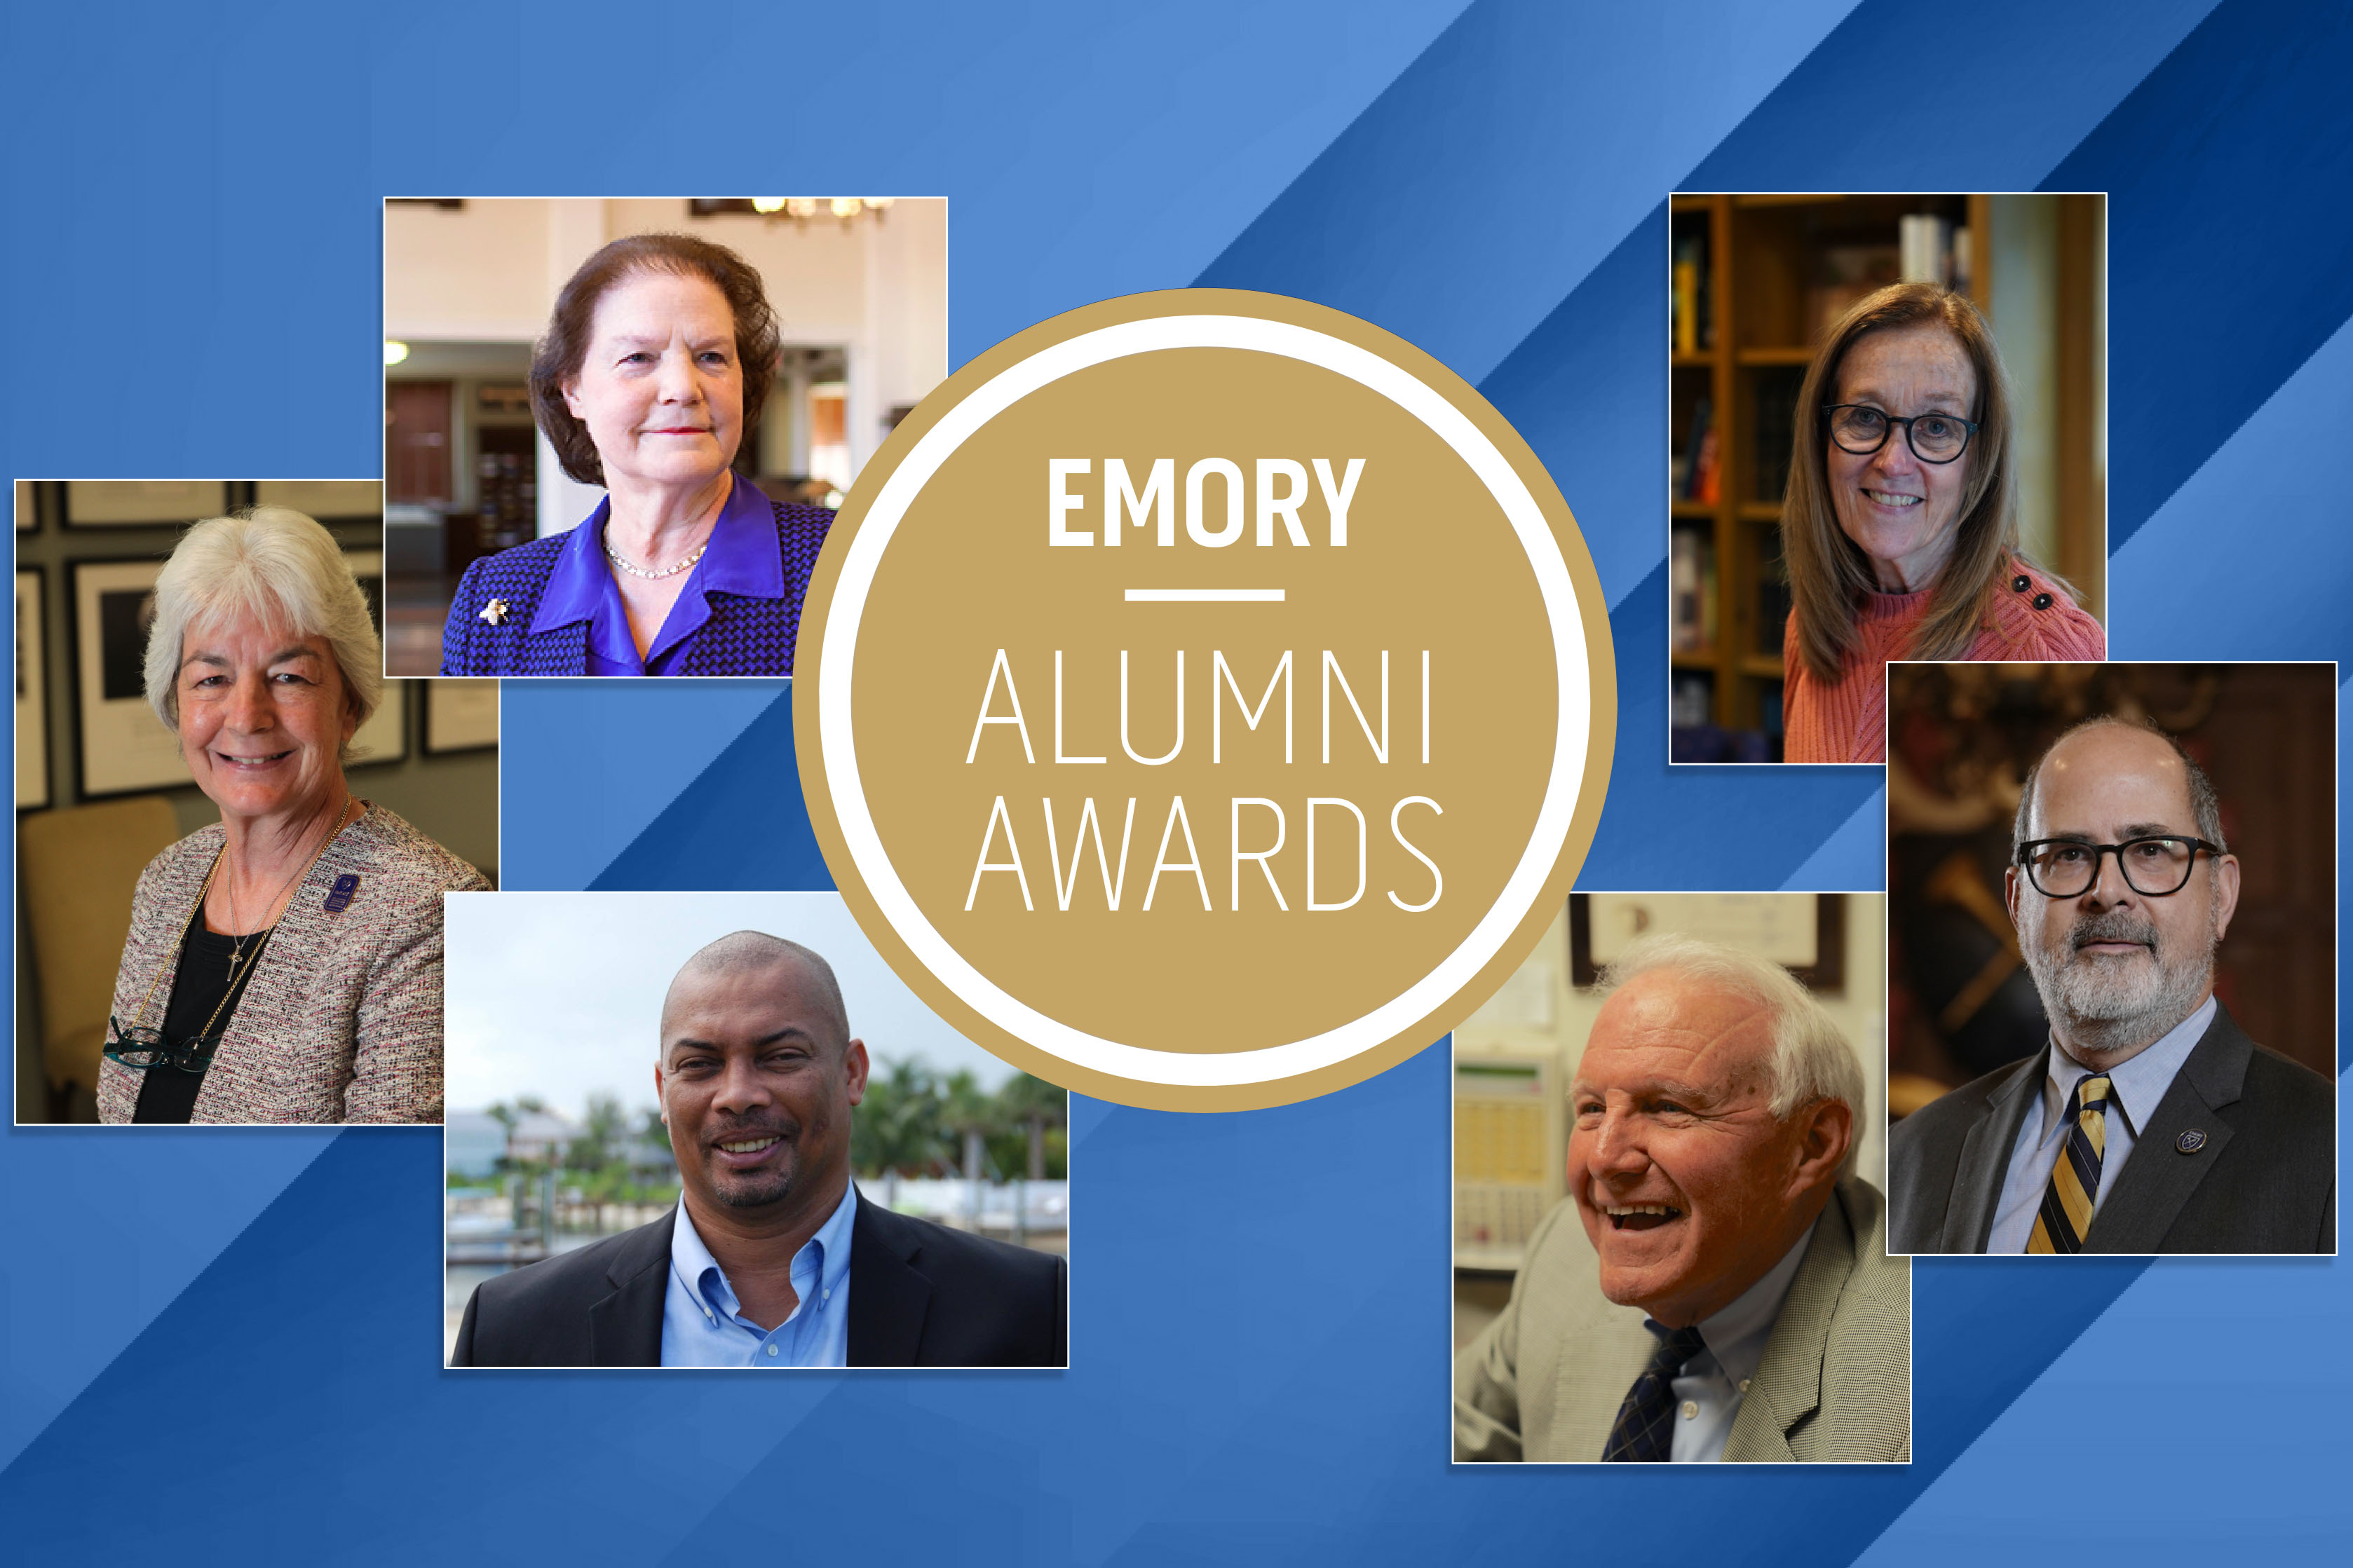 Decorative: Emory Alumni Awards illustration